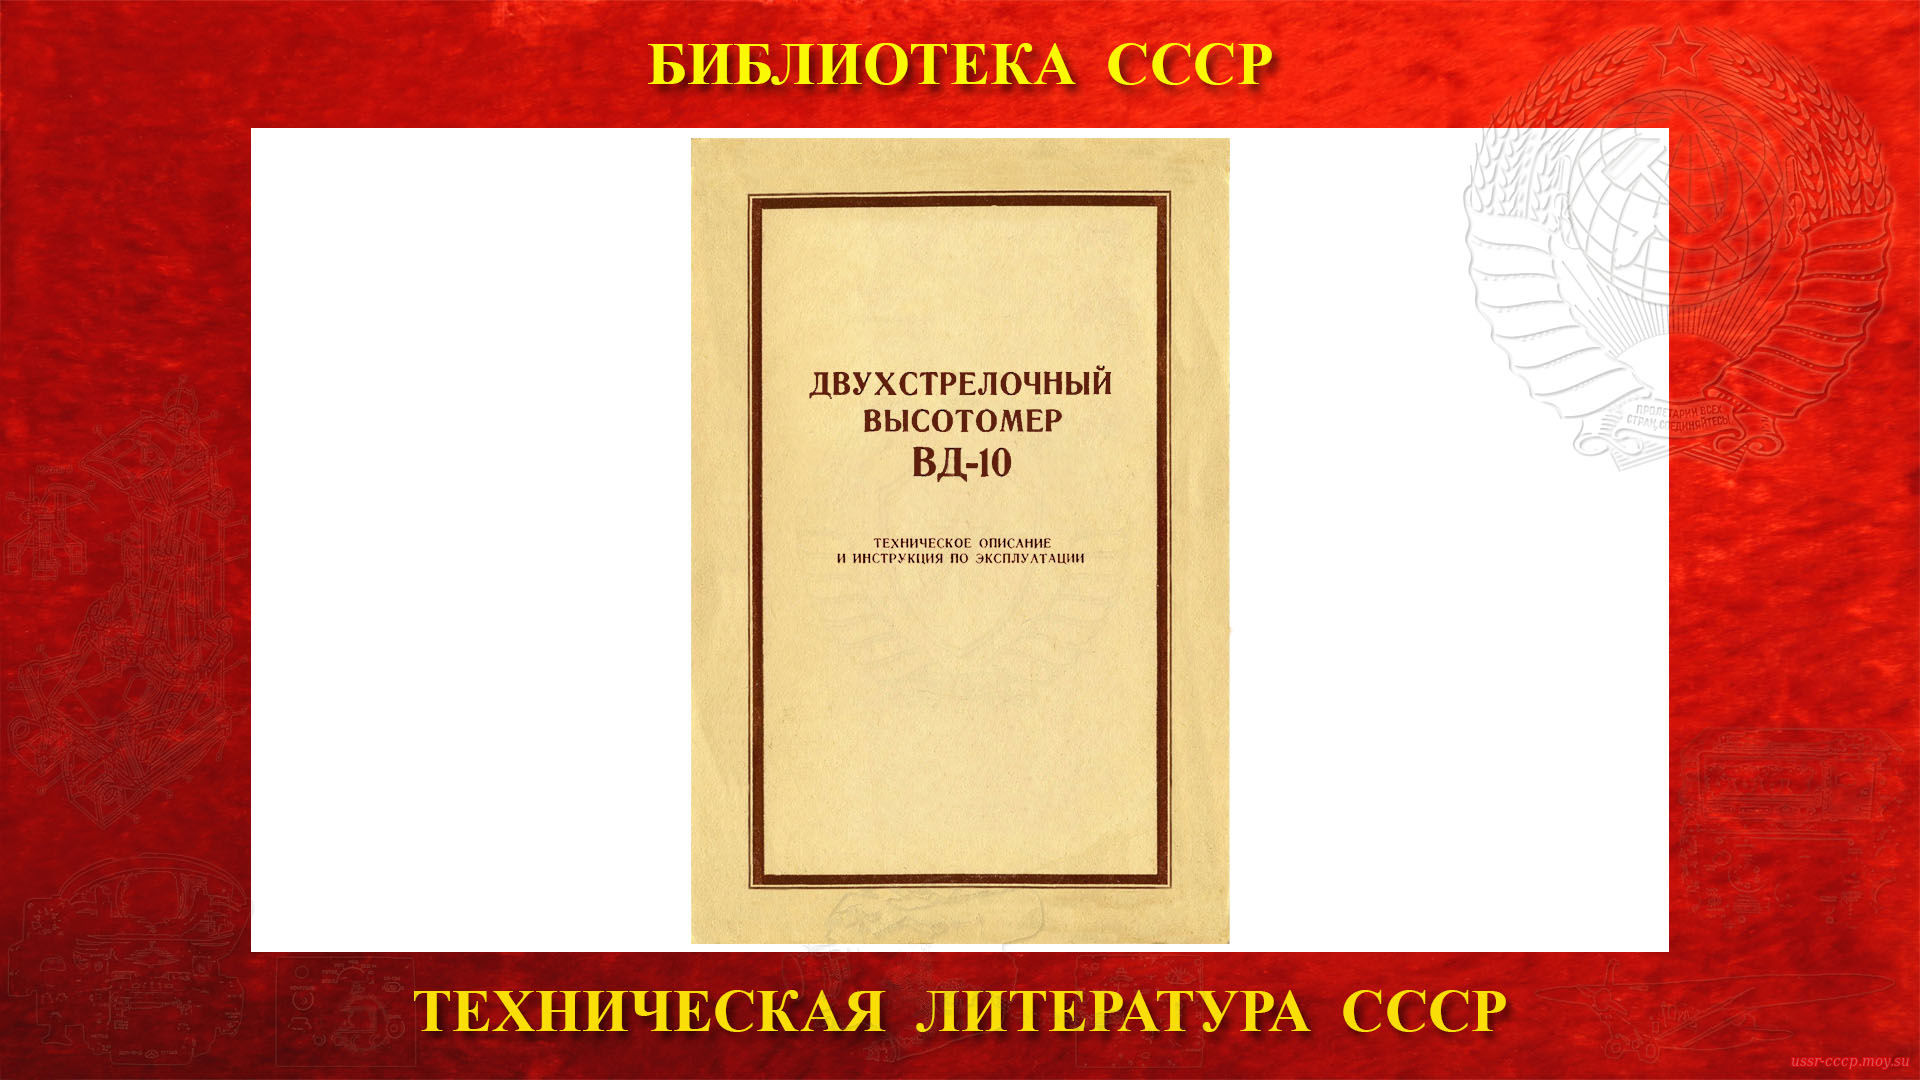 ВД-10 — Двухстрелочный высотомер — Библиотека СССР